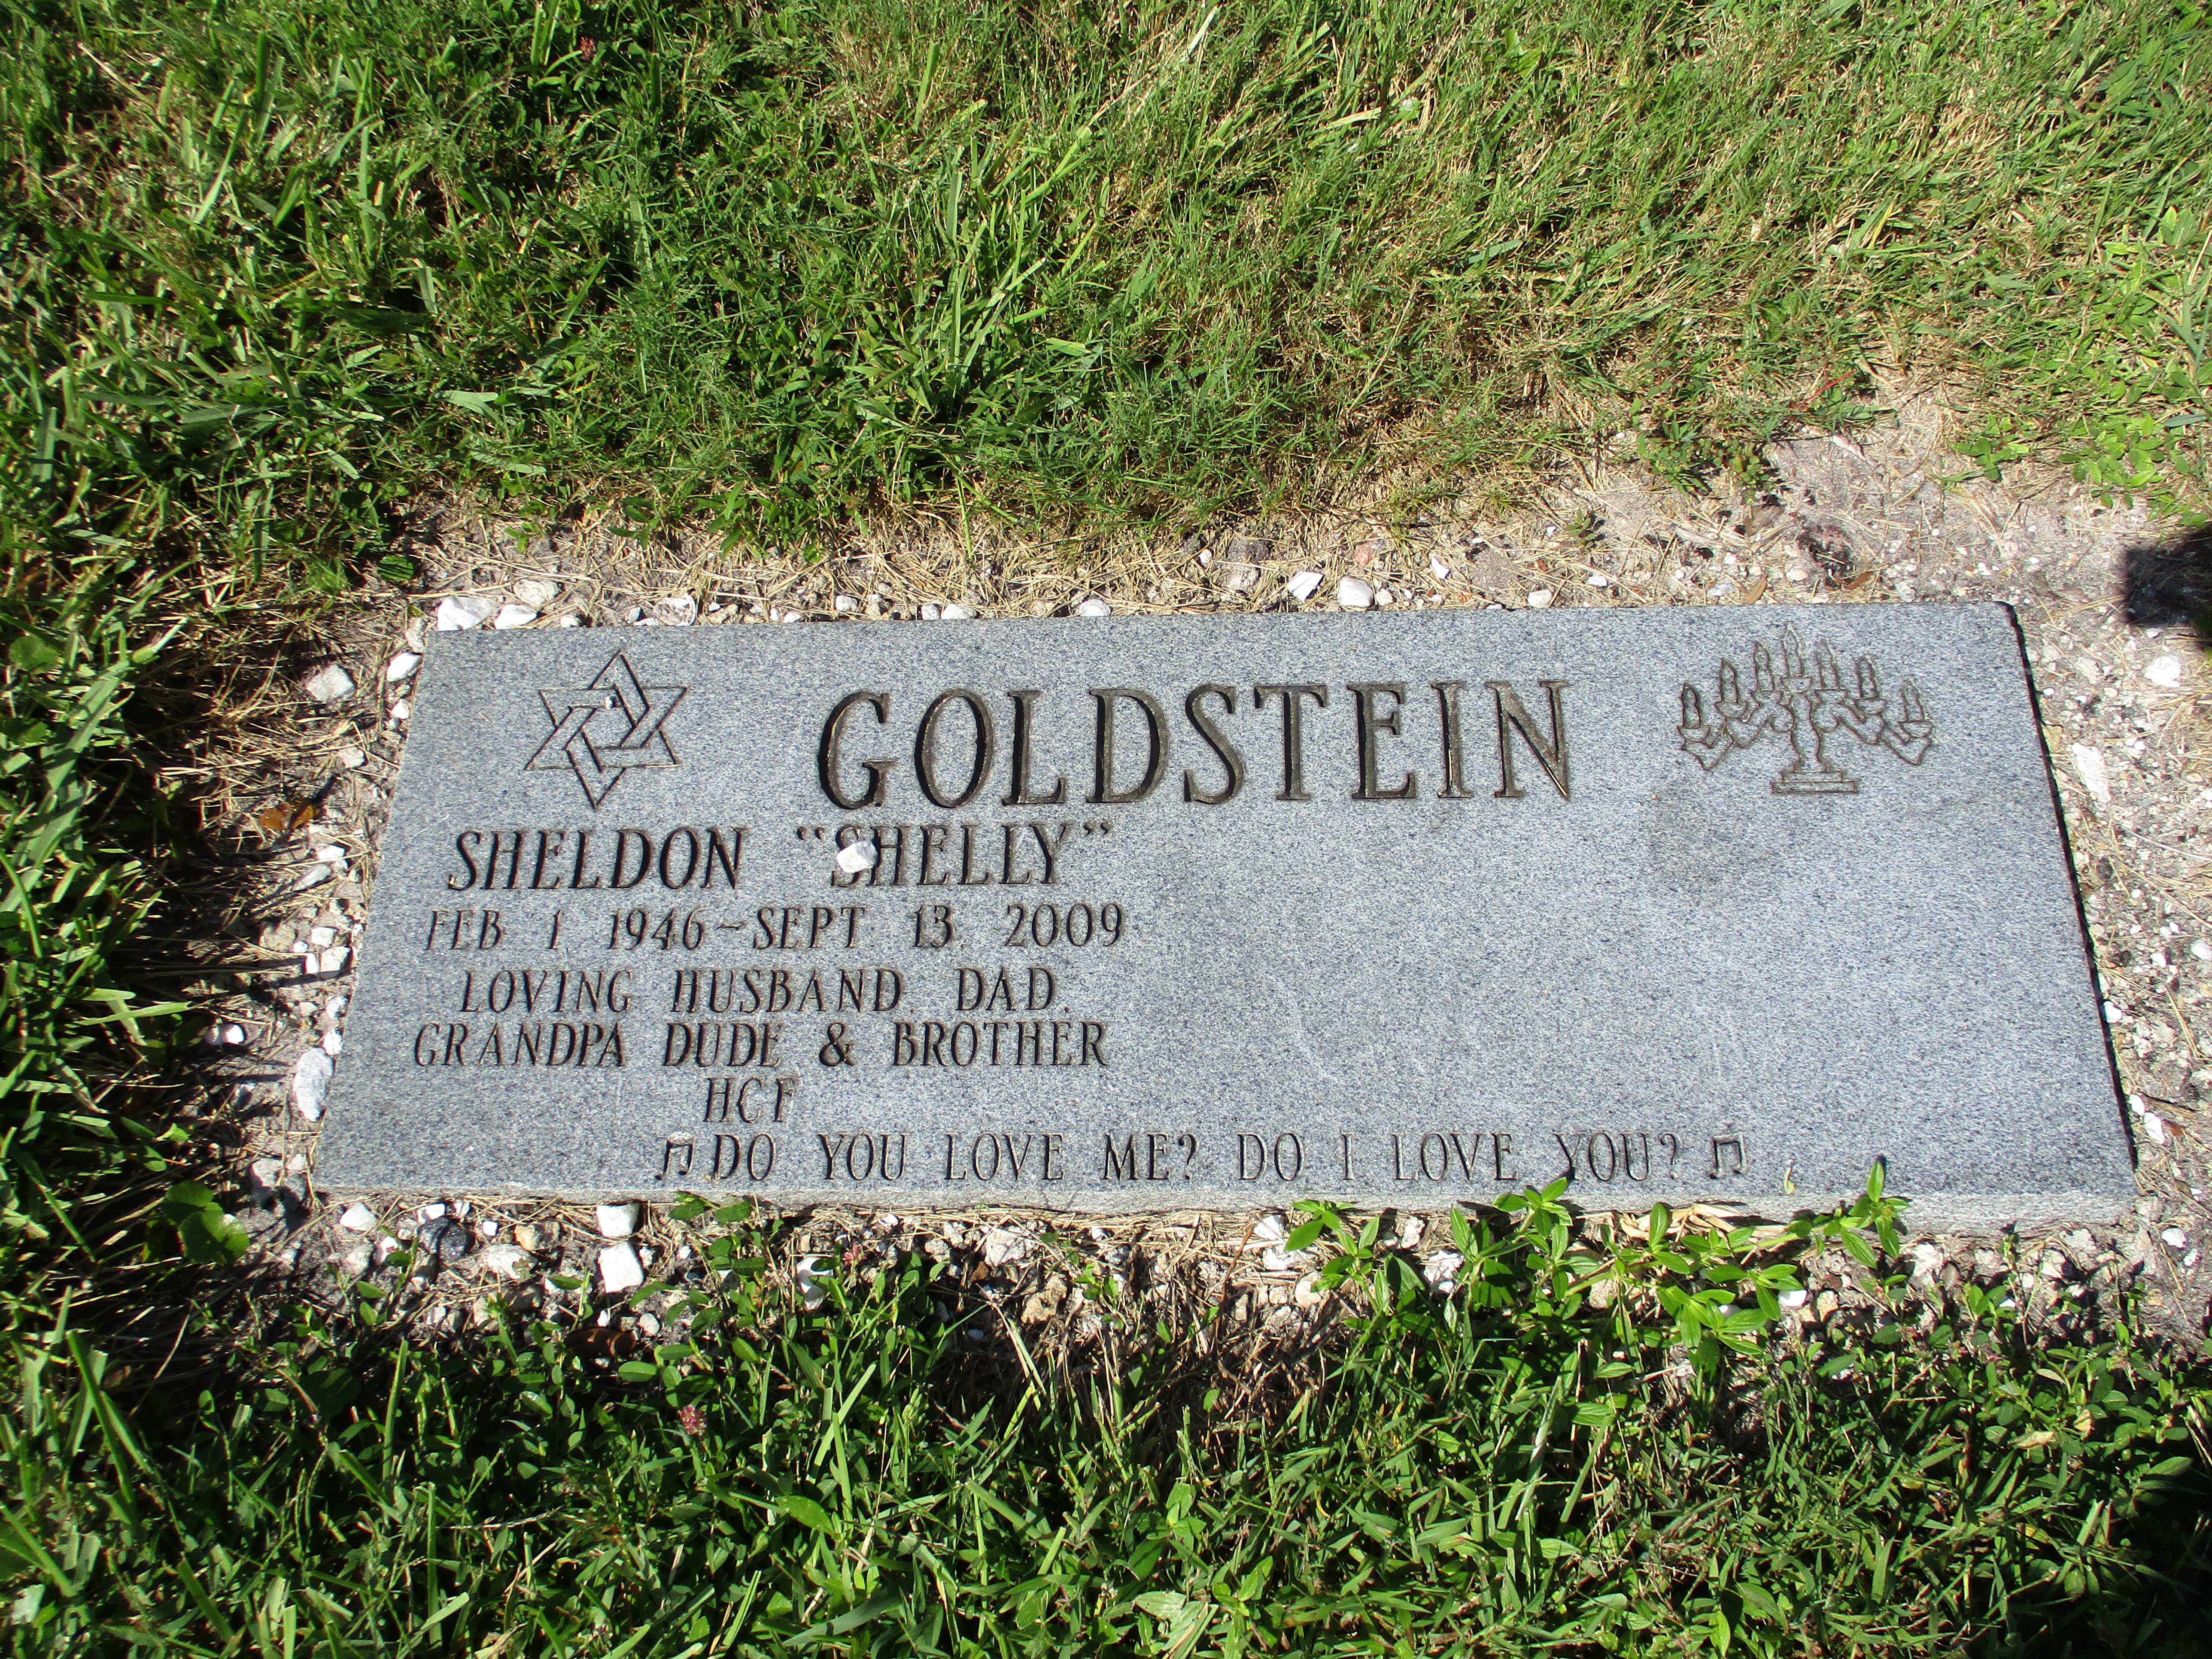 Sheldon "Shelly" Goldstein